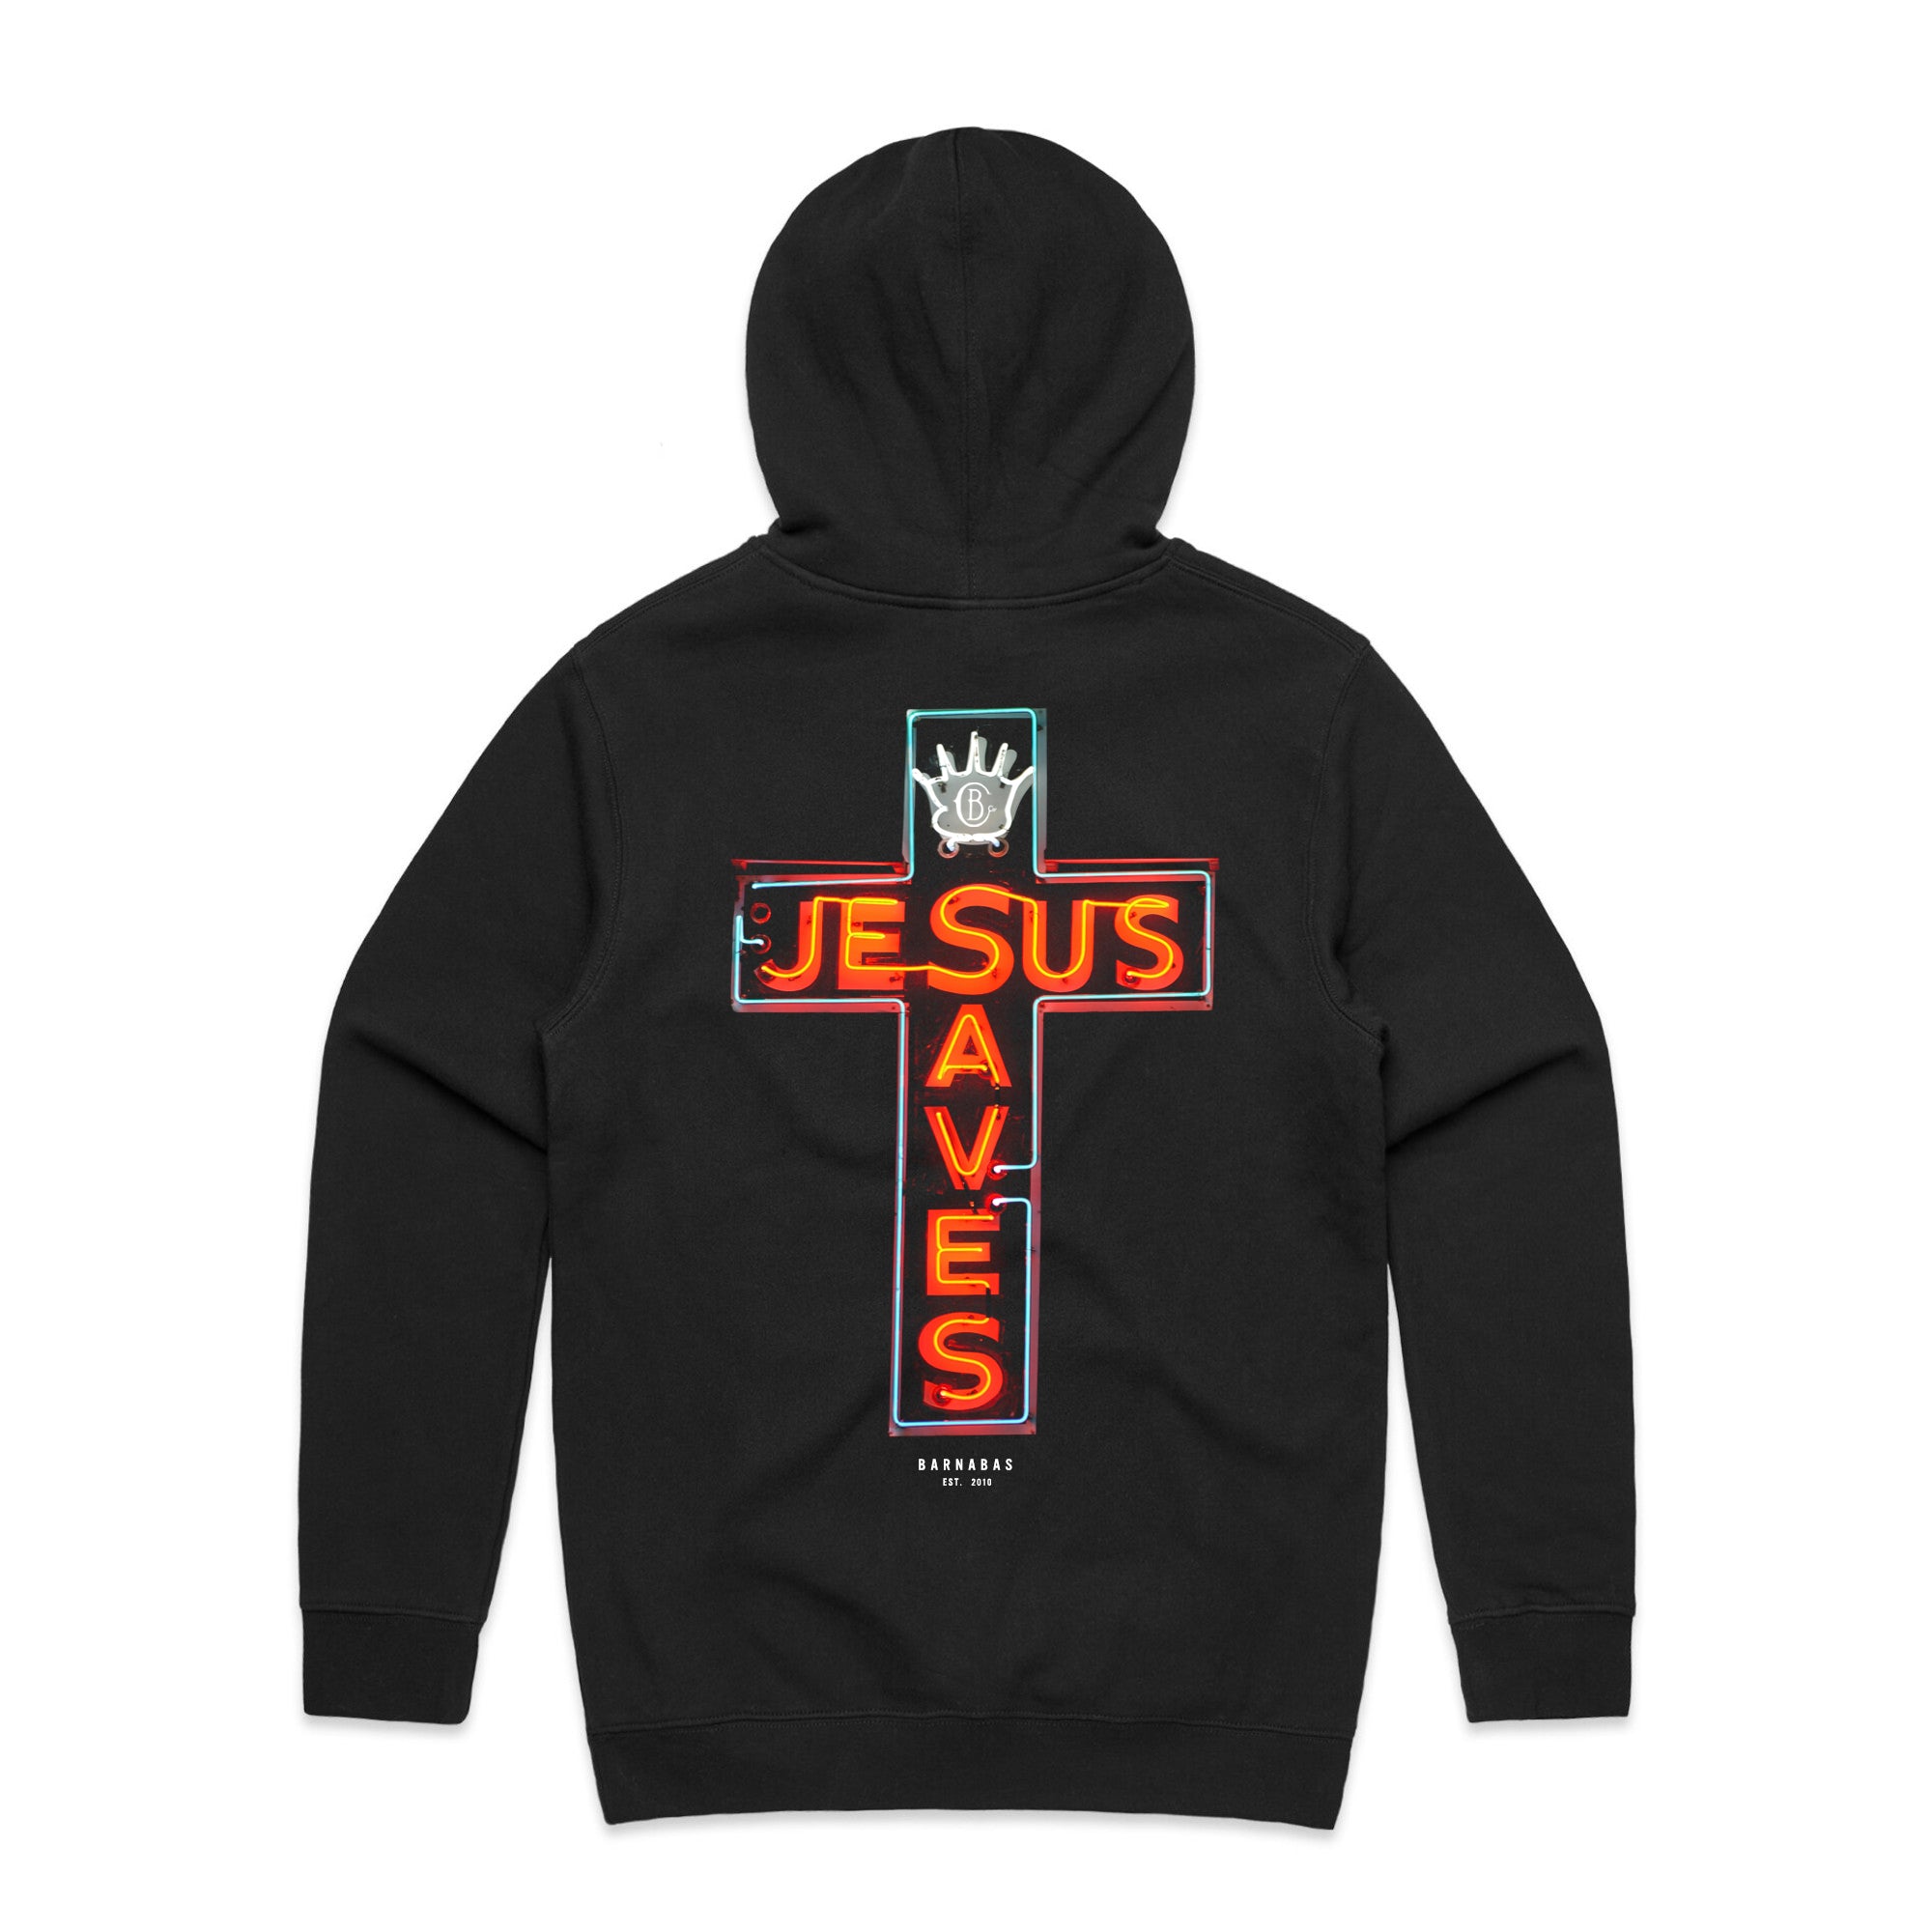 JESUS SAVES<br>Youth Hoodie [Black]